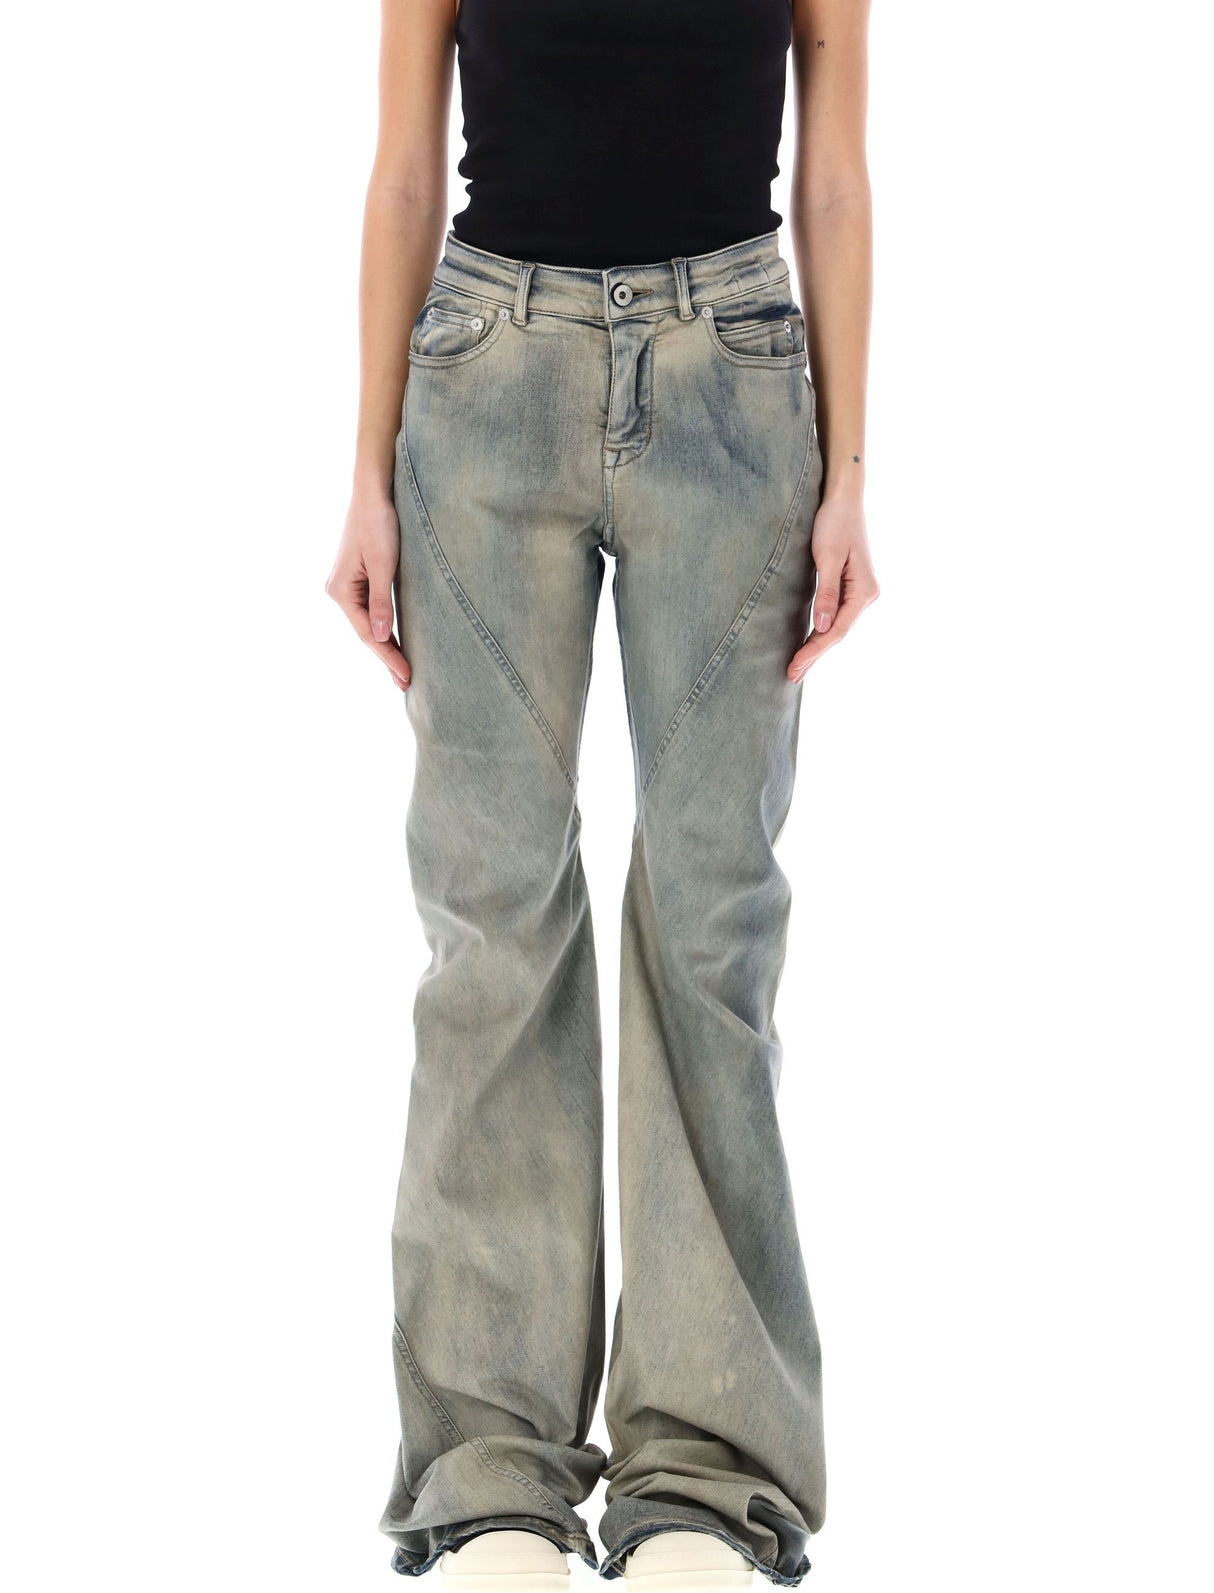 女性天空斜角伸展裤 - 直切设计，长及地面带有后排贴袋和腰带環槽